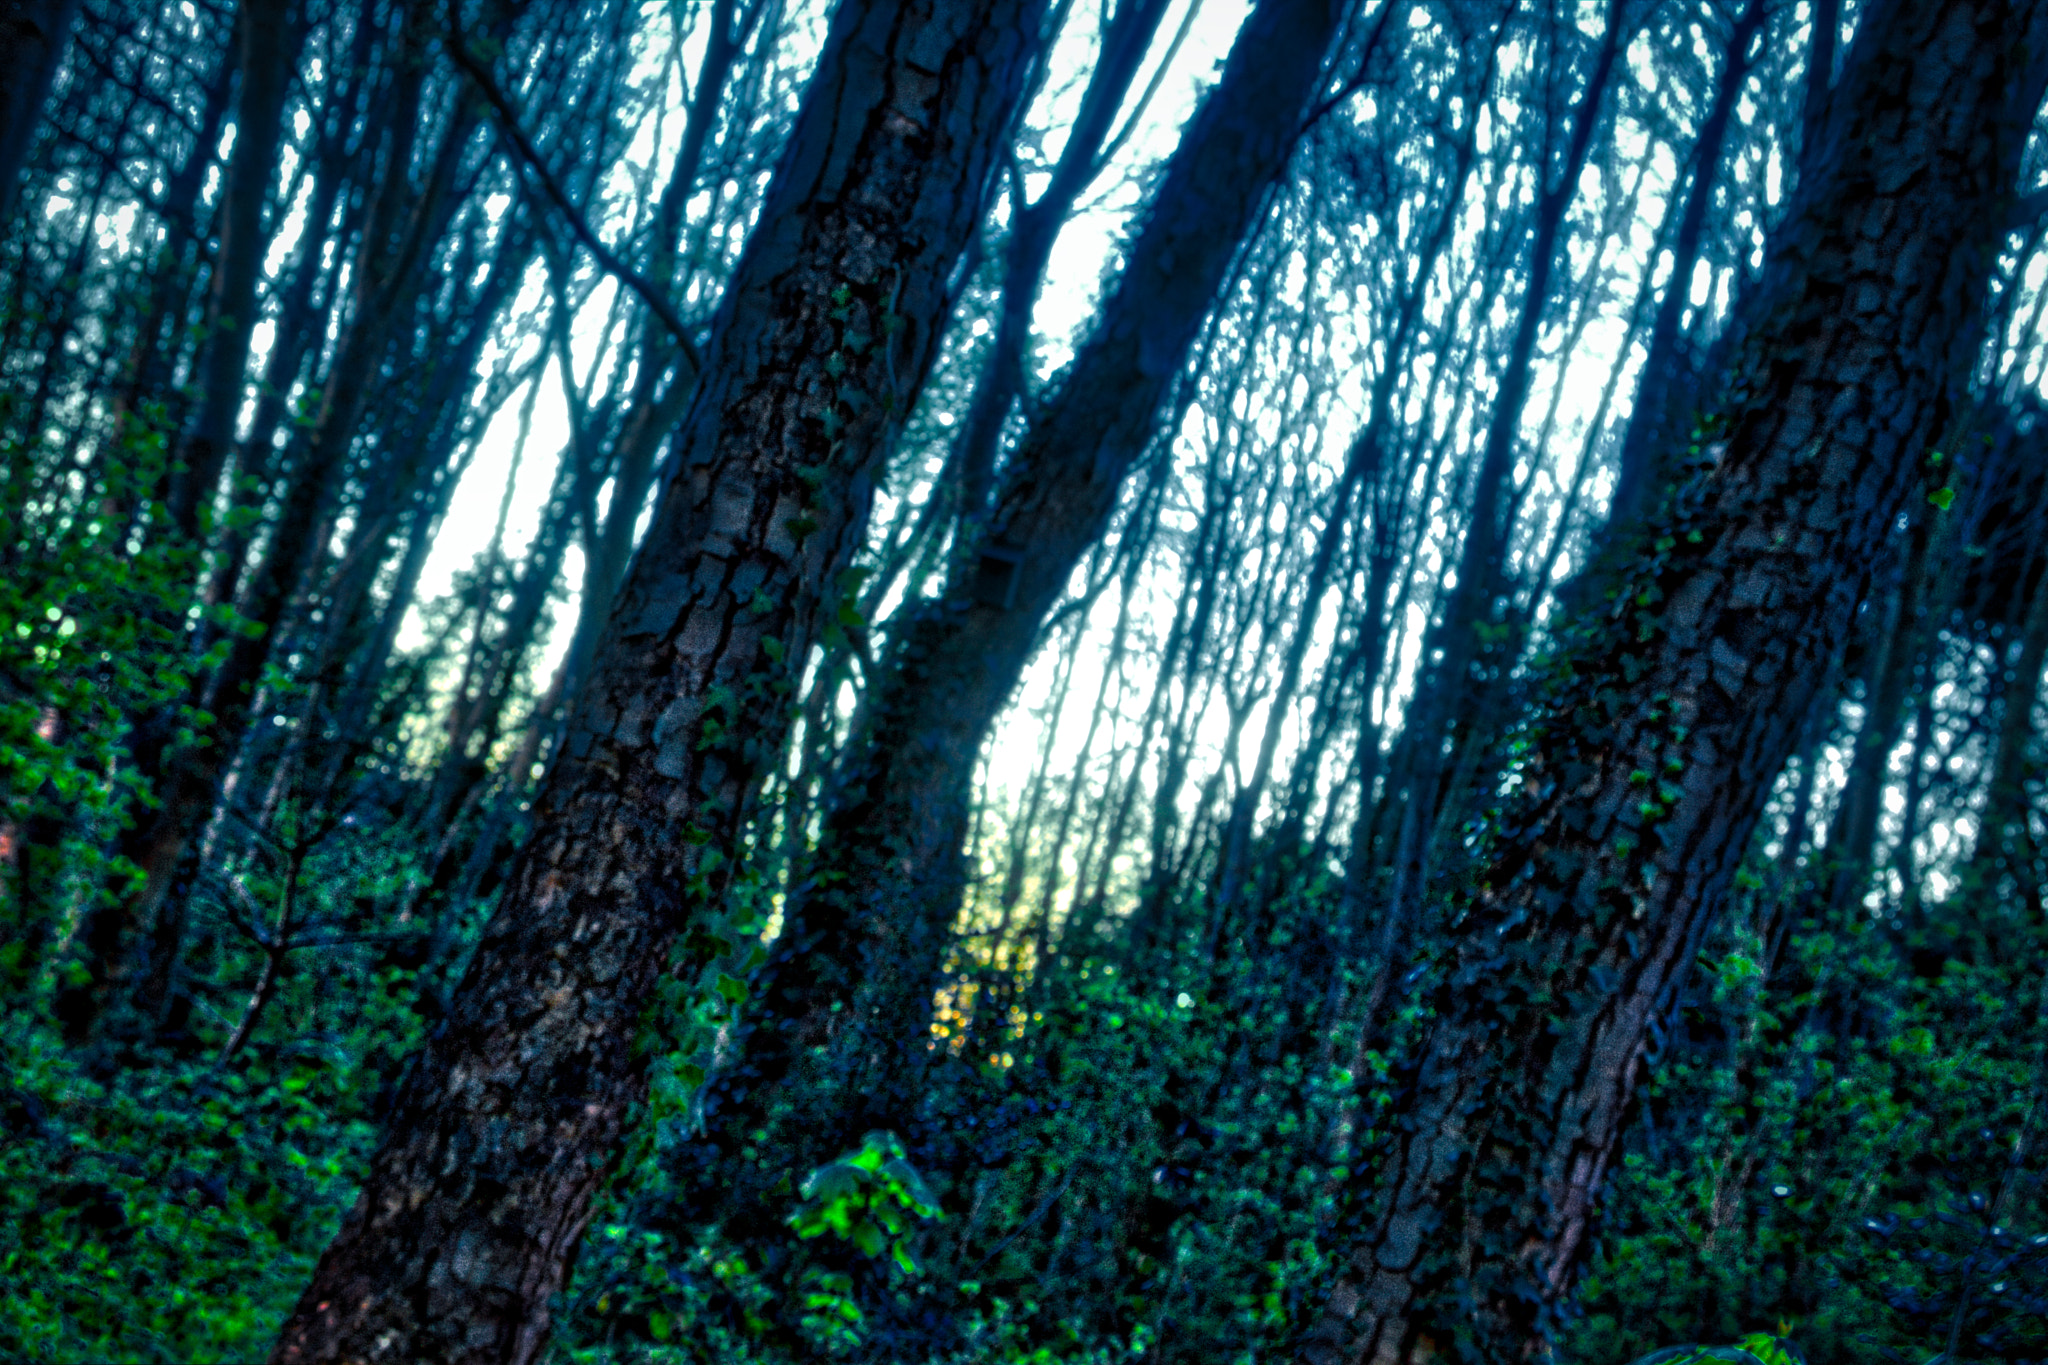 Sony Alpha NEX-7 + Sony E 18-55mm F3.5-5.6 OSS sample photo. Enchanted woodland photography